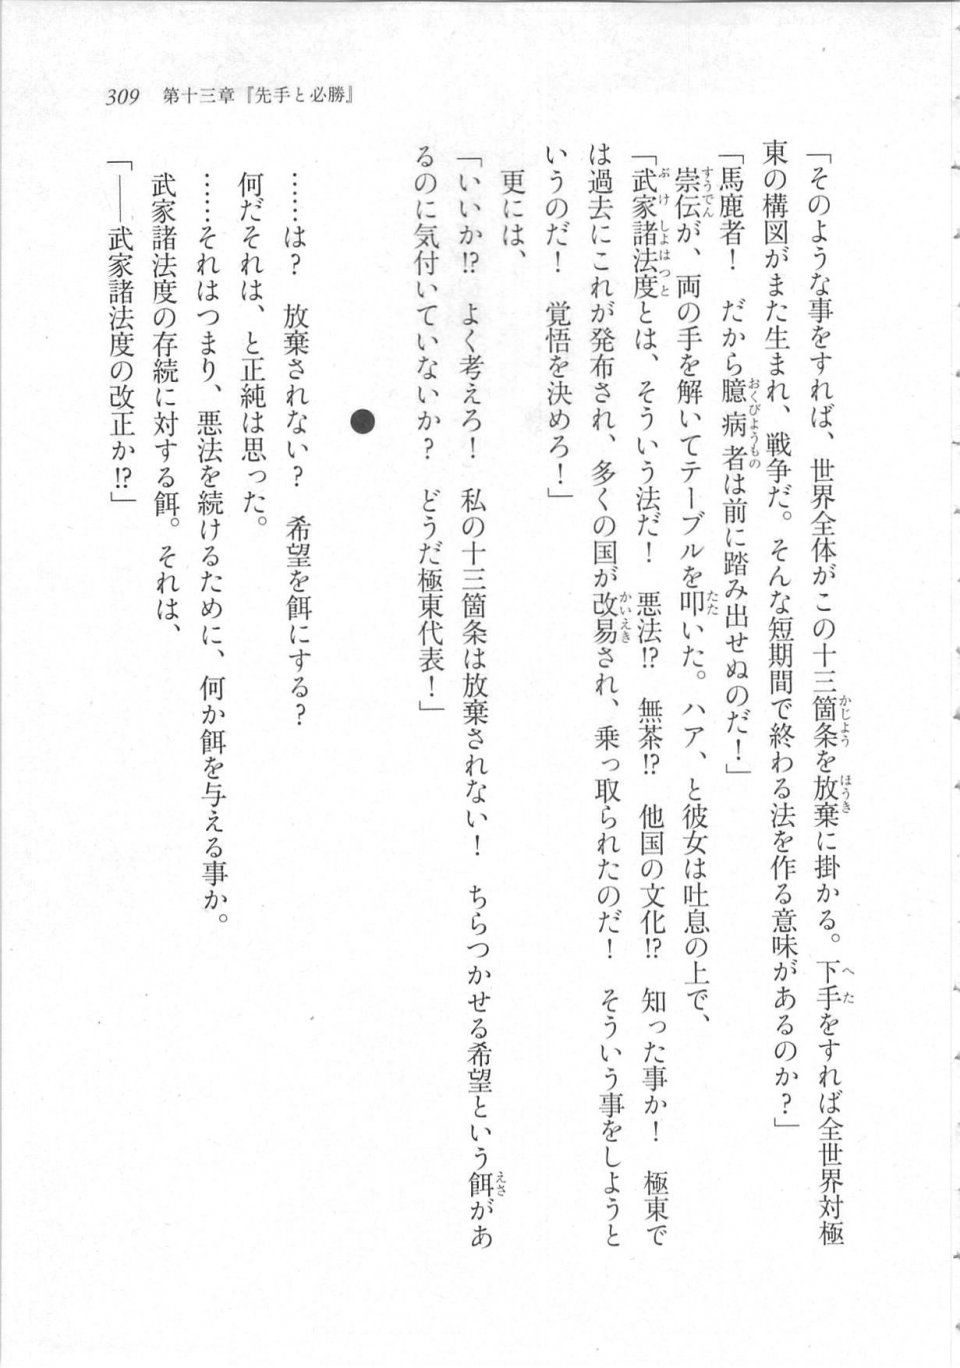 Kyoukai Senjou no Horizon LN Sidestory Vol 3 - Photo #313